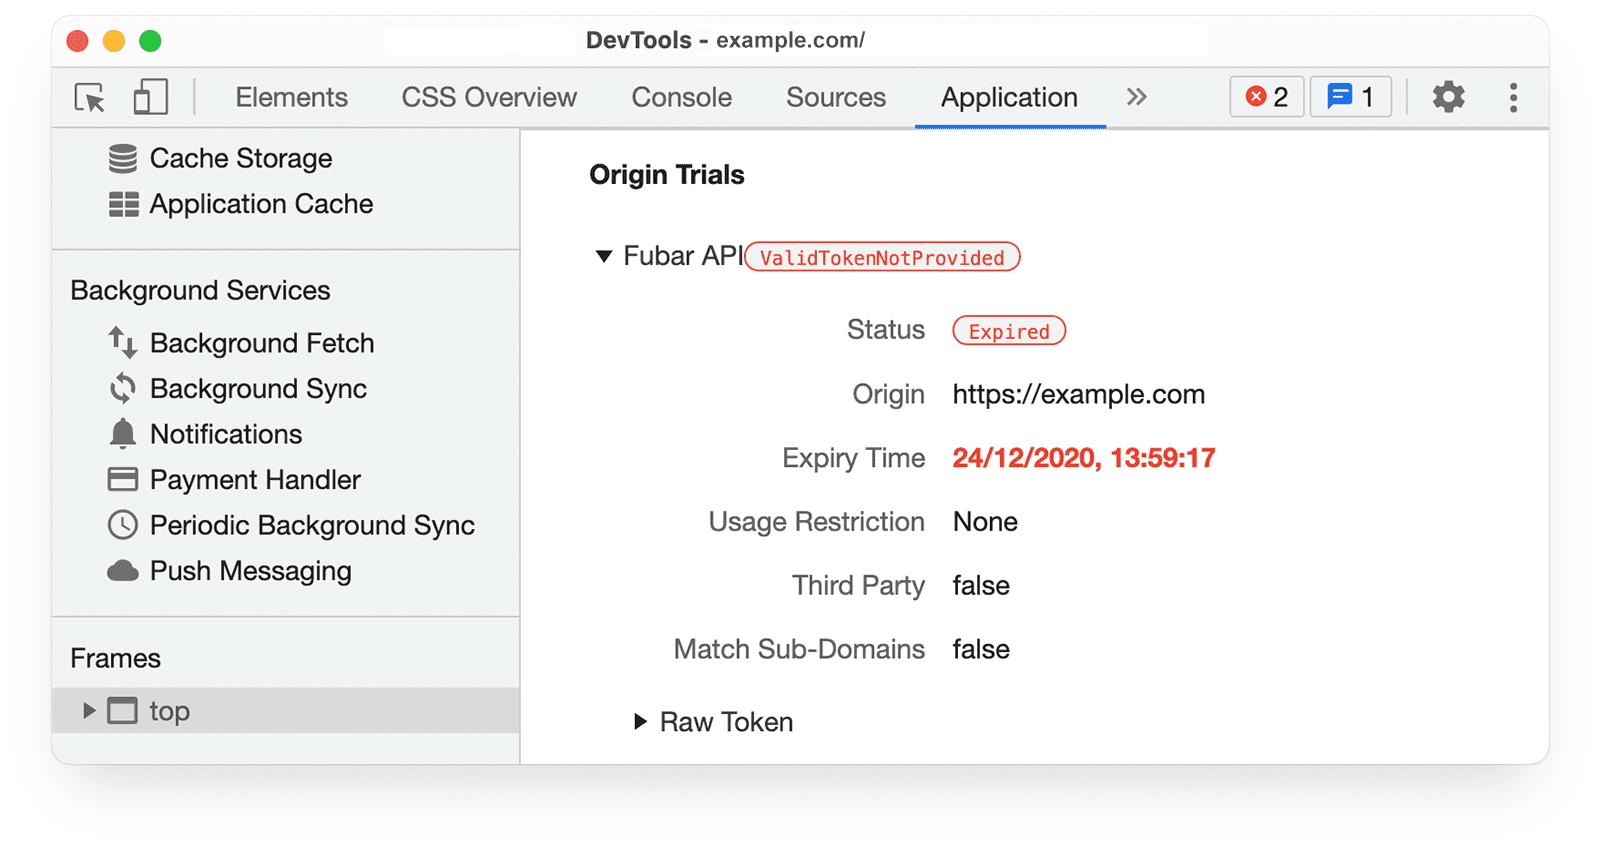 Informasi uji coba origin
Chrome DevTools di panel Application, yang menandai Status: Success.